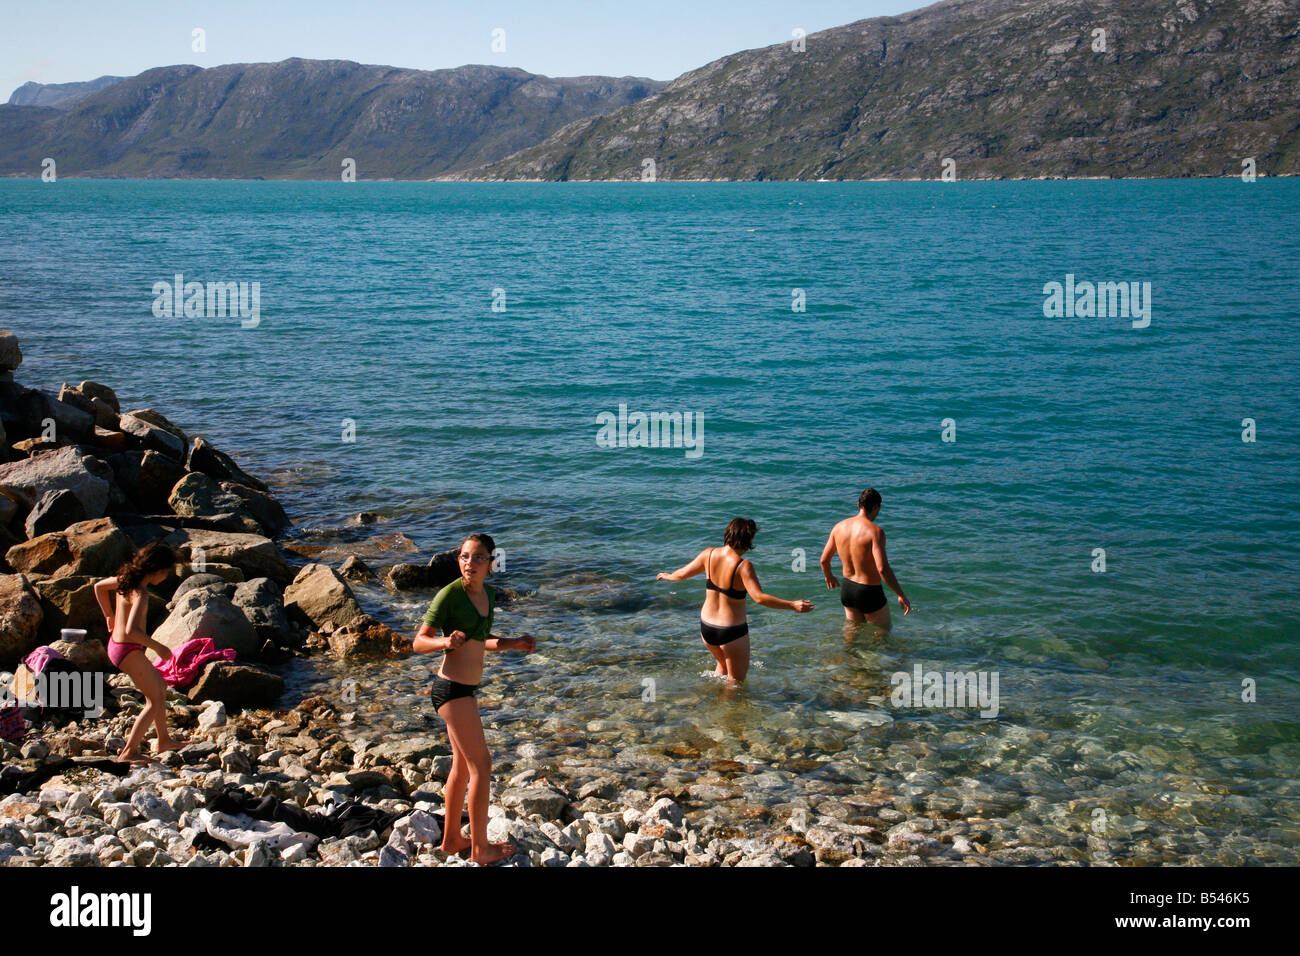 Août 2008 - Famille baignant dans l'eau froide à Ivigtut Groenland Banque D'Images